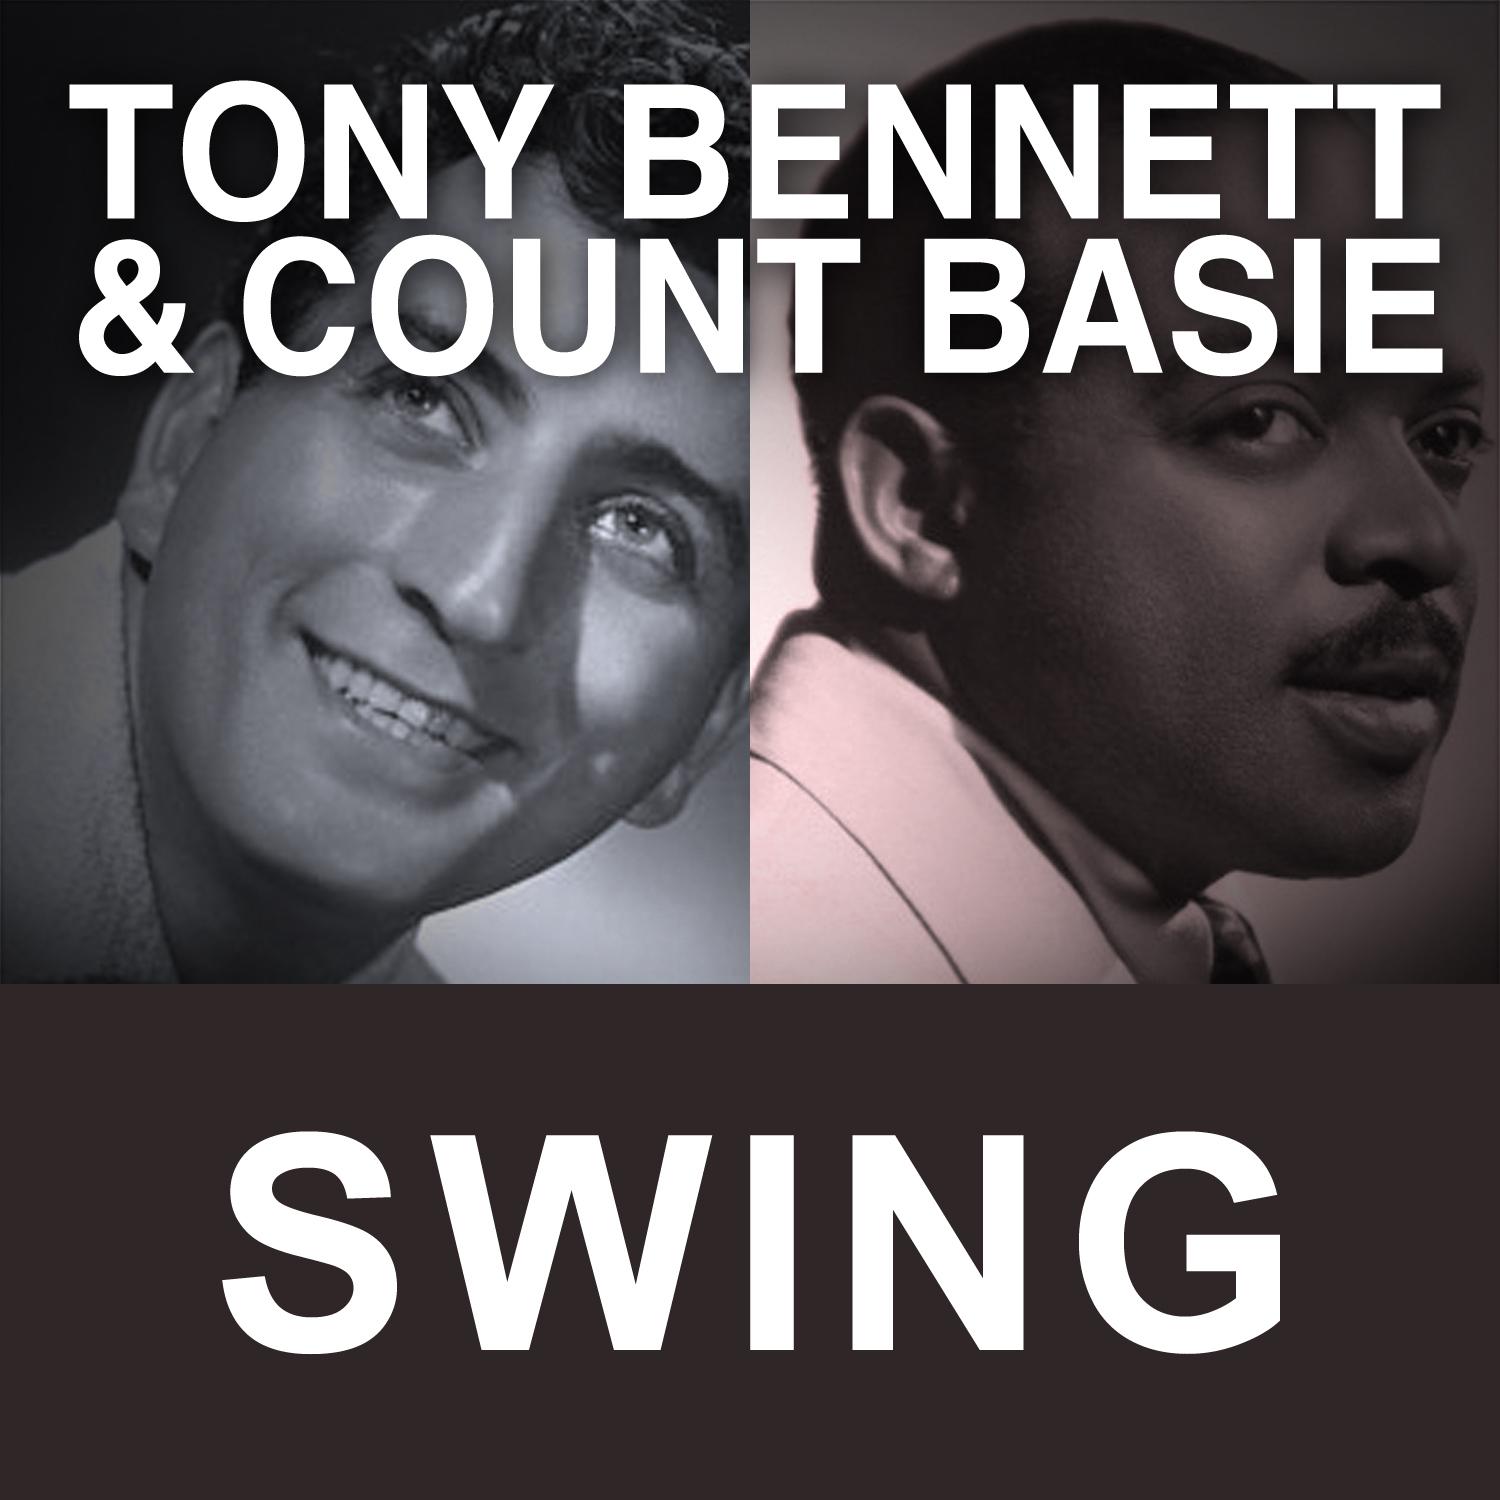 Tony Bennett & Count Basie Swing